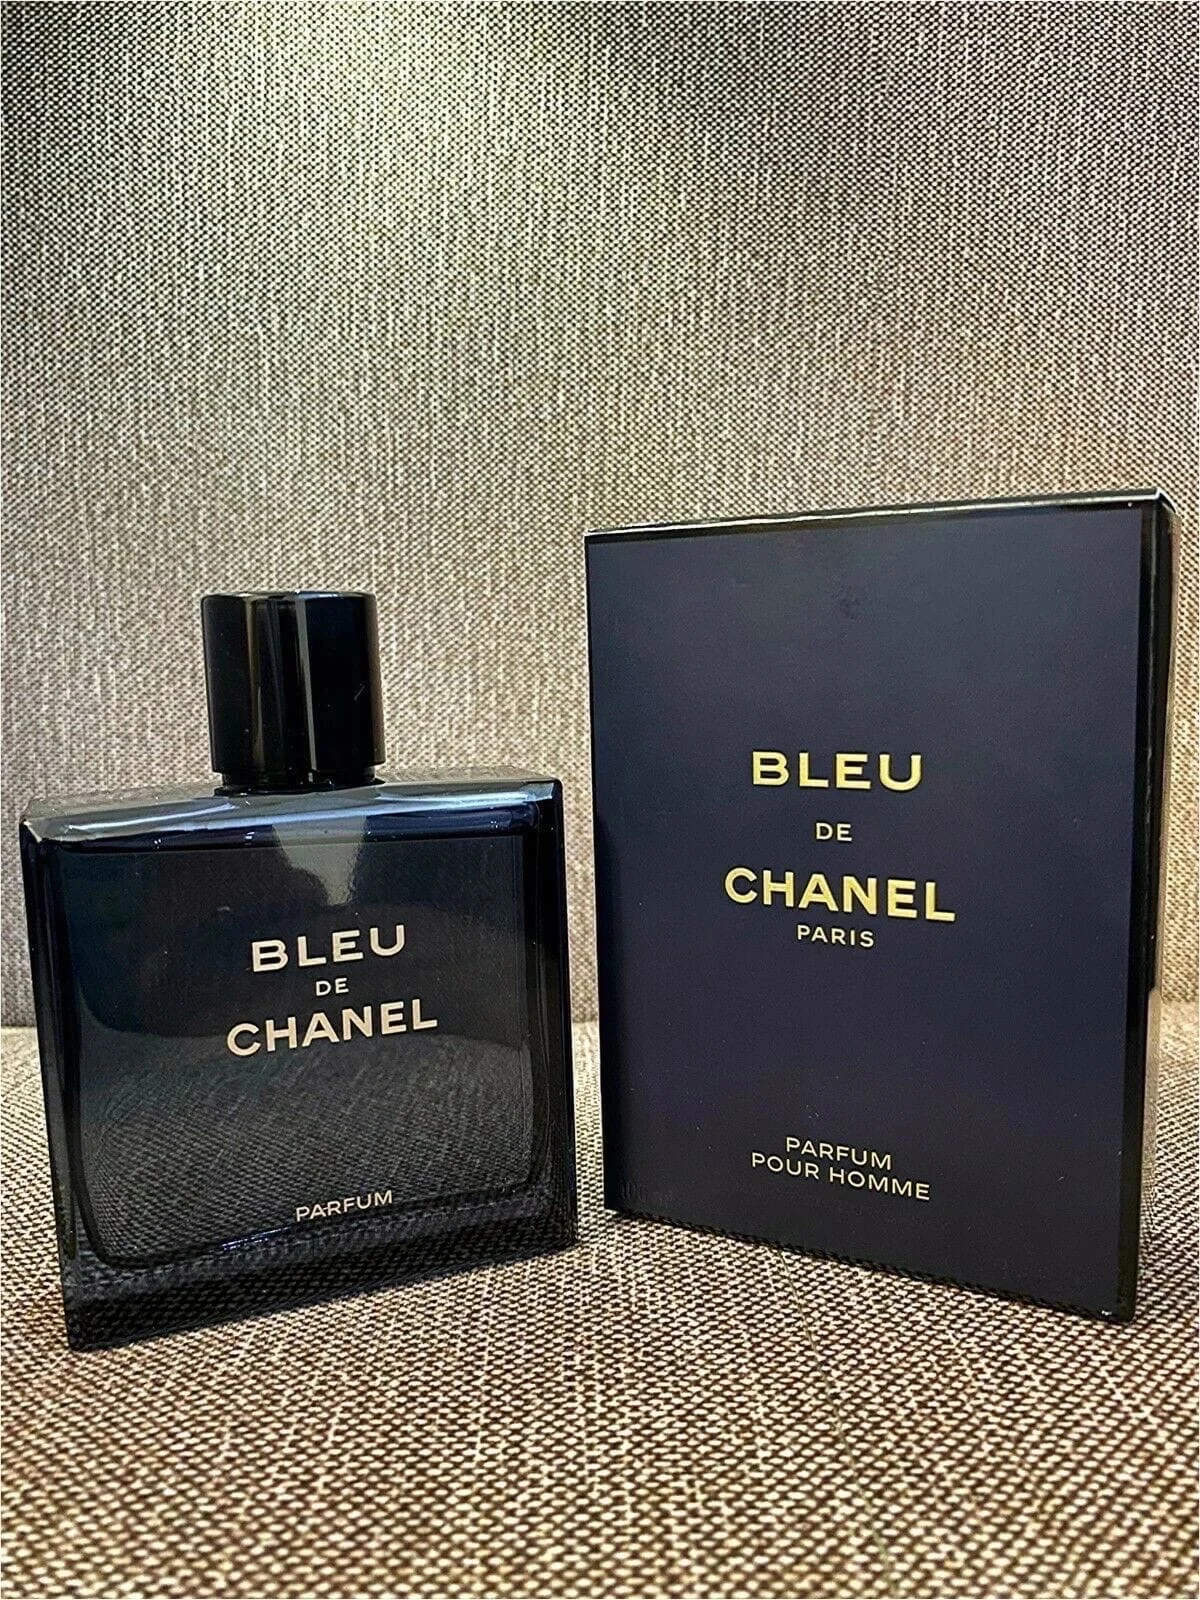 Bleu de Chanel 5 ml perfume oil concentration over 30% perfume perfume eau de  toilette women's fragrances - AliExpress